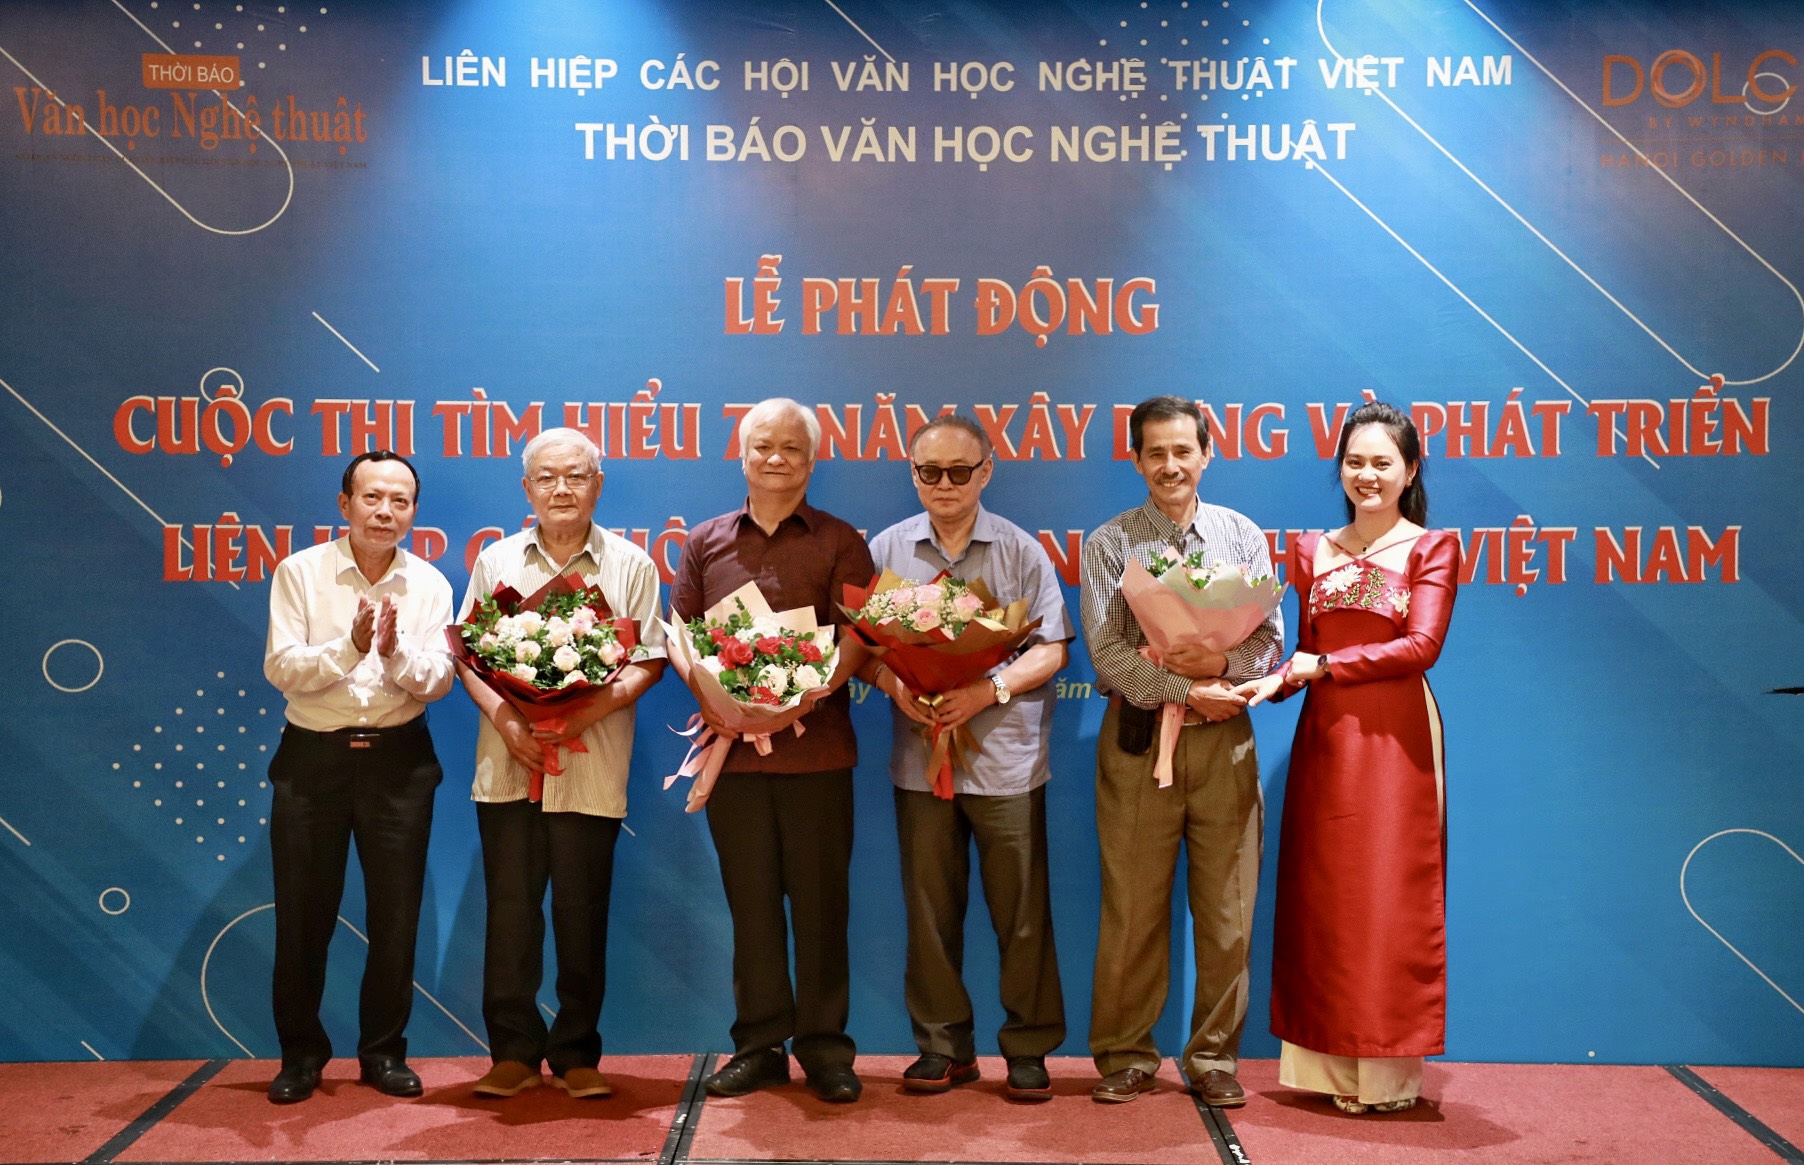 Phát động Cuộc thi Tìm hiểu 75 năm xây dựng và phát triển Liên hiệp các Hội Văn học nghệ thuật Việt Nam - 4